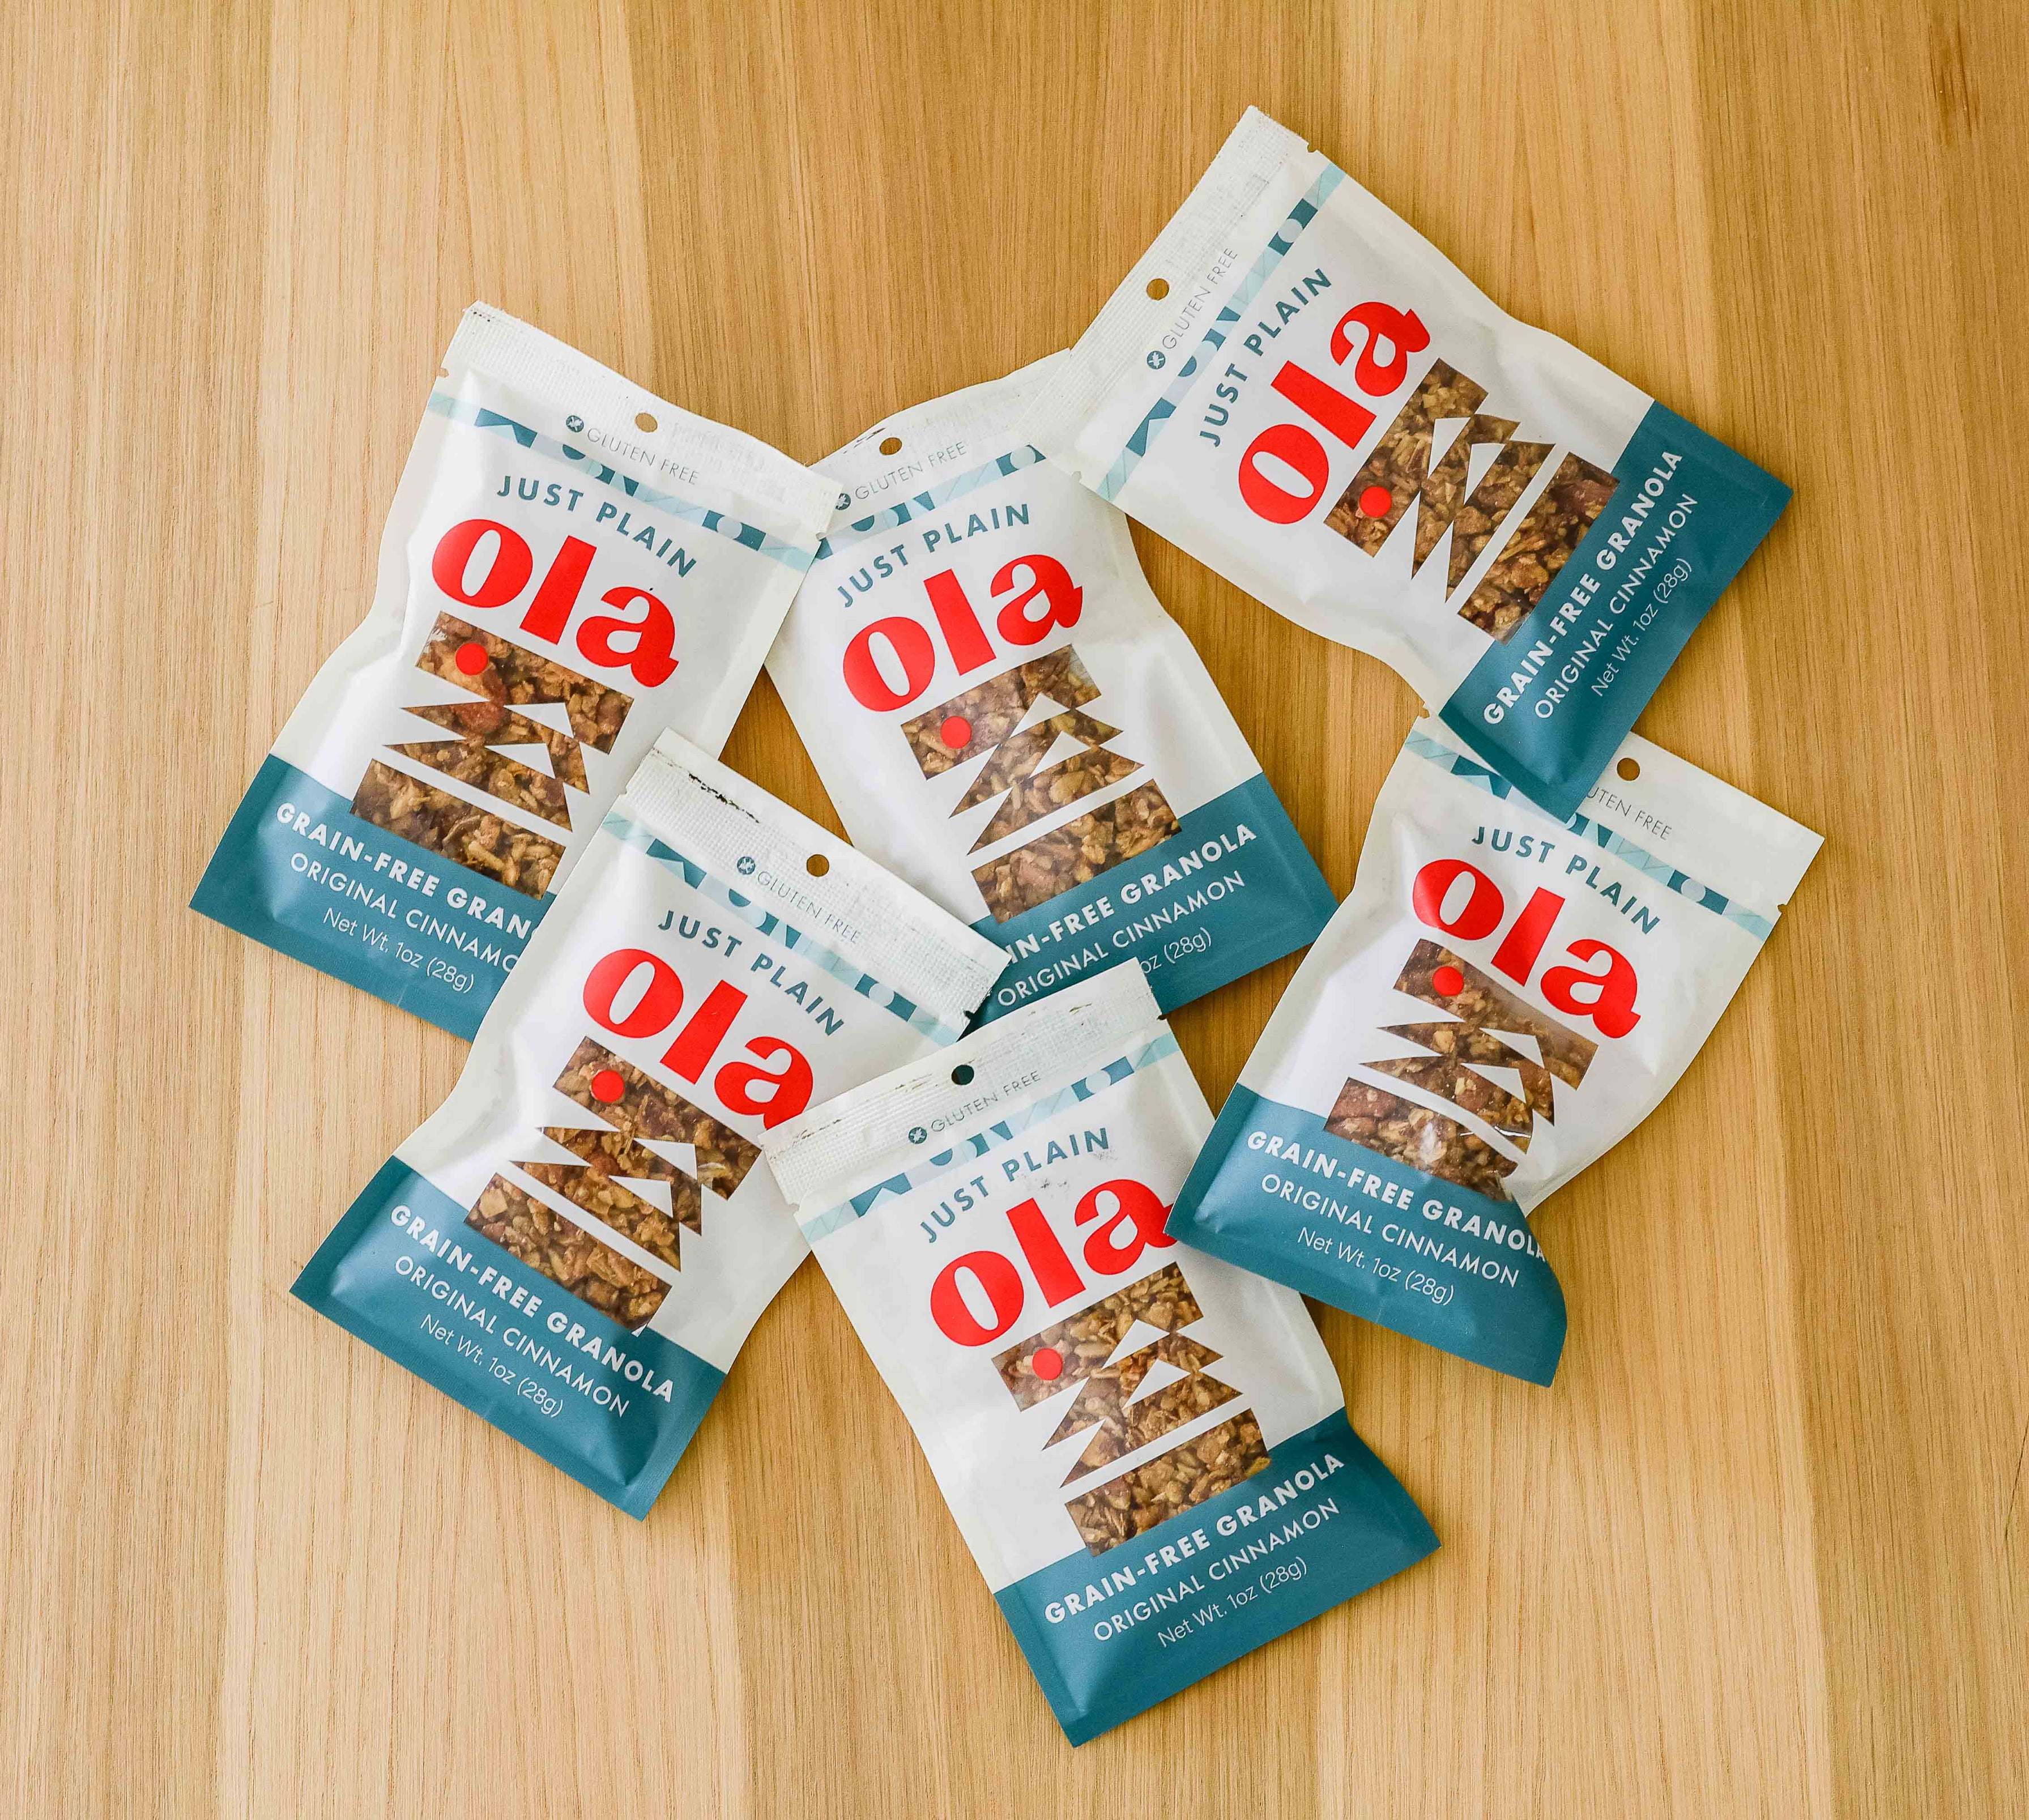 Original Cinnamon Grain-free Granola 1oz bag (6 pack)